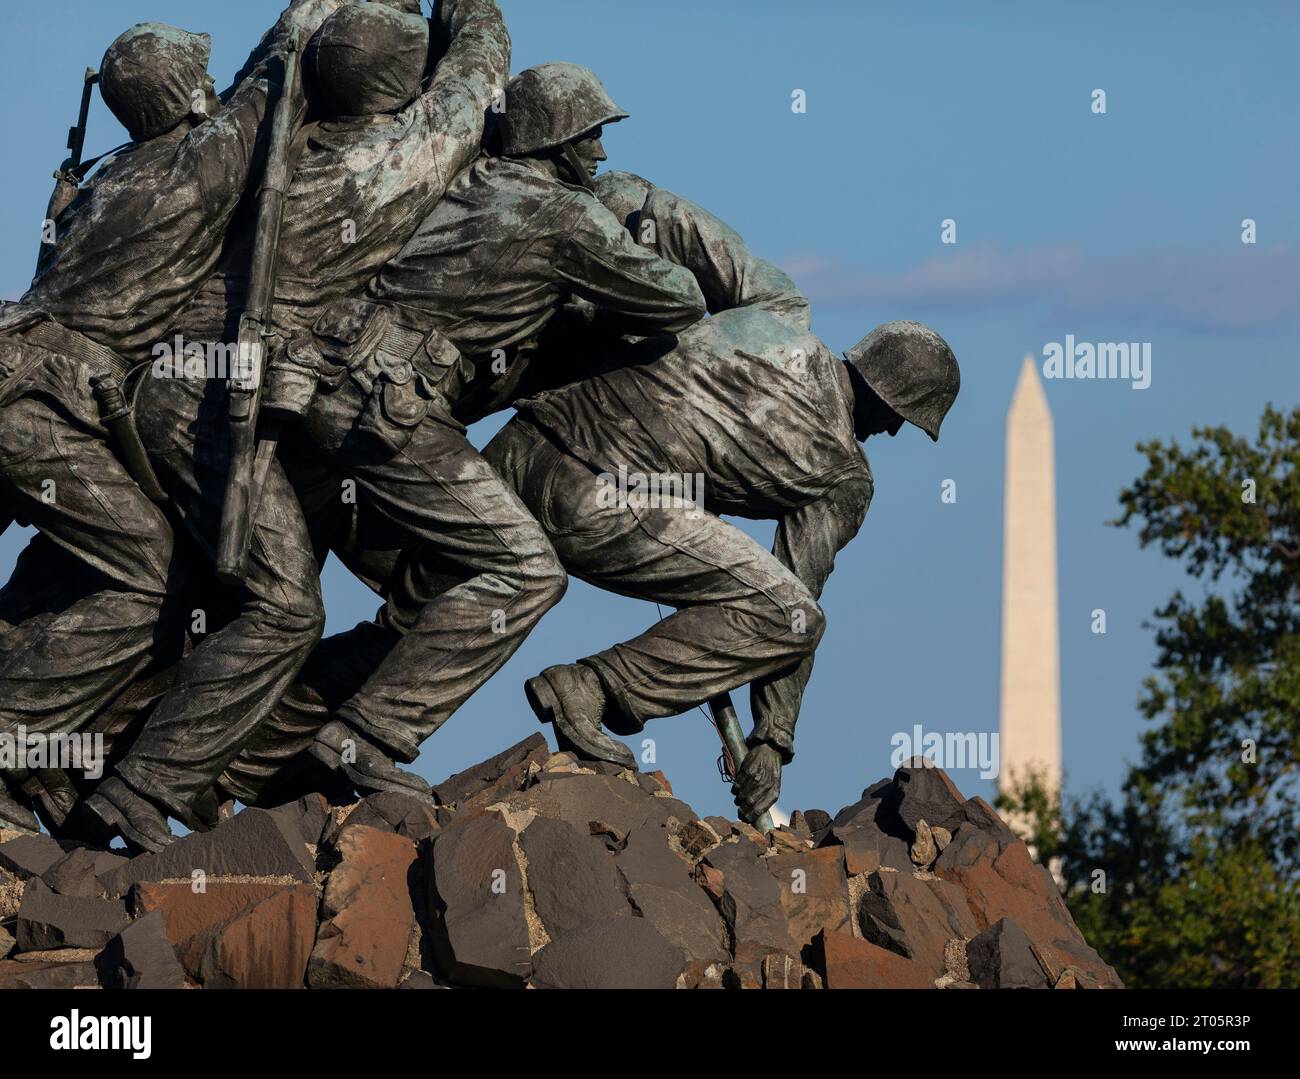 ROSSLYN, ARLINGTON, VIRGINIA, USA - détail du mémorial de guerre du corps des Marines des États-Unis Iwo Jima. Banque D'Images